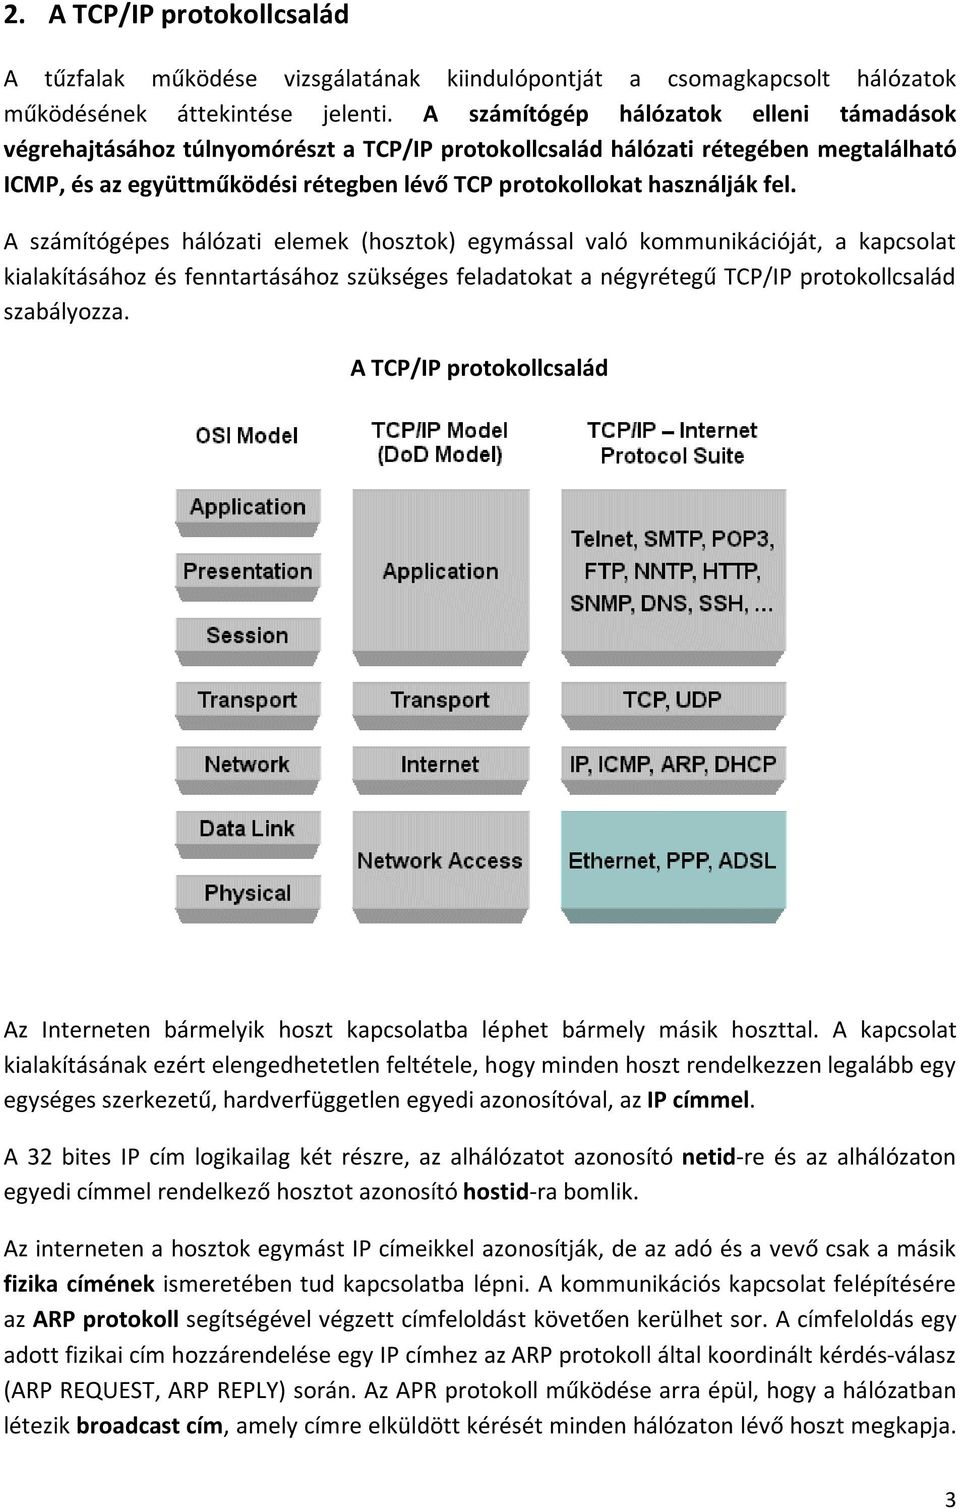 fel. A számítógépes hálózati elemek (hosztok) egymással való kommunikációját, a kapcsolat kialakításához és fenntartásához szükséges feladatokat a négyrétegű TCP/IP protokollcsalád szabályozza.